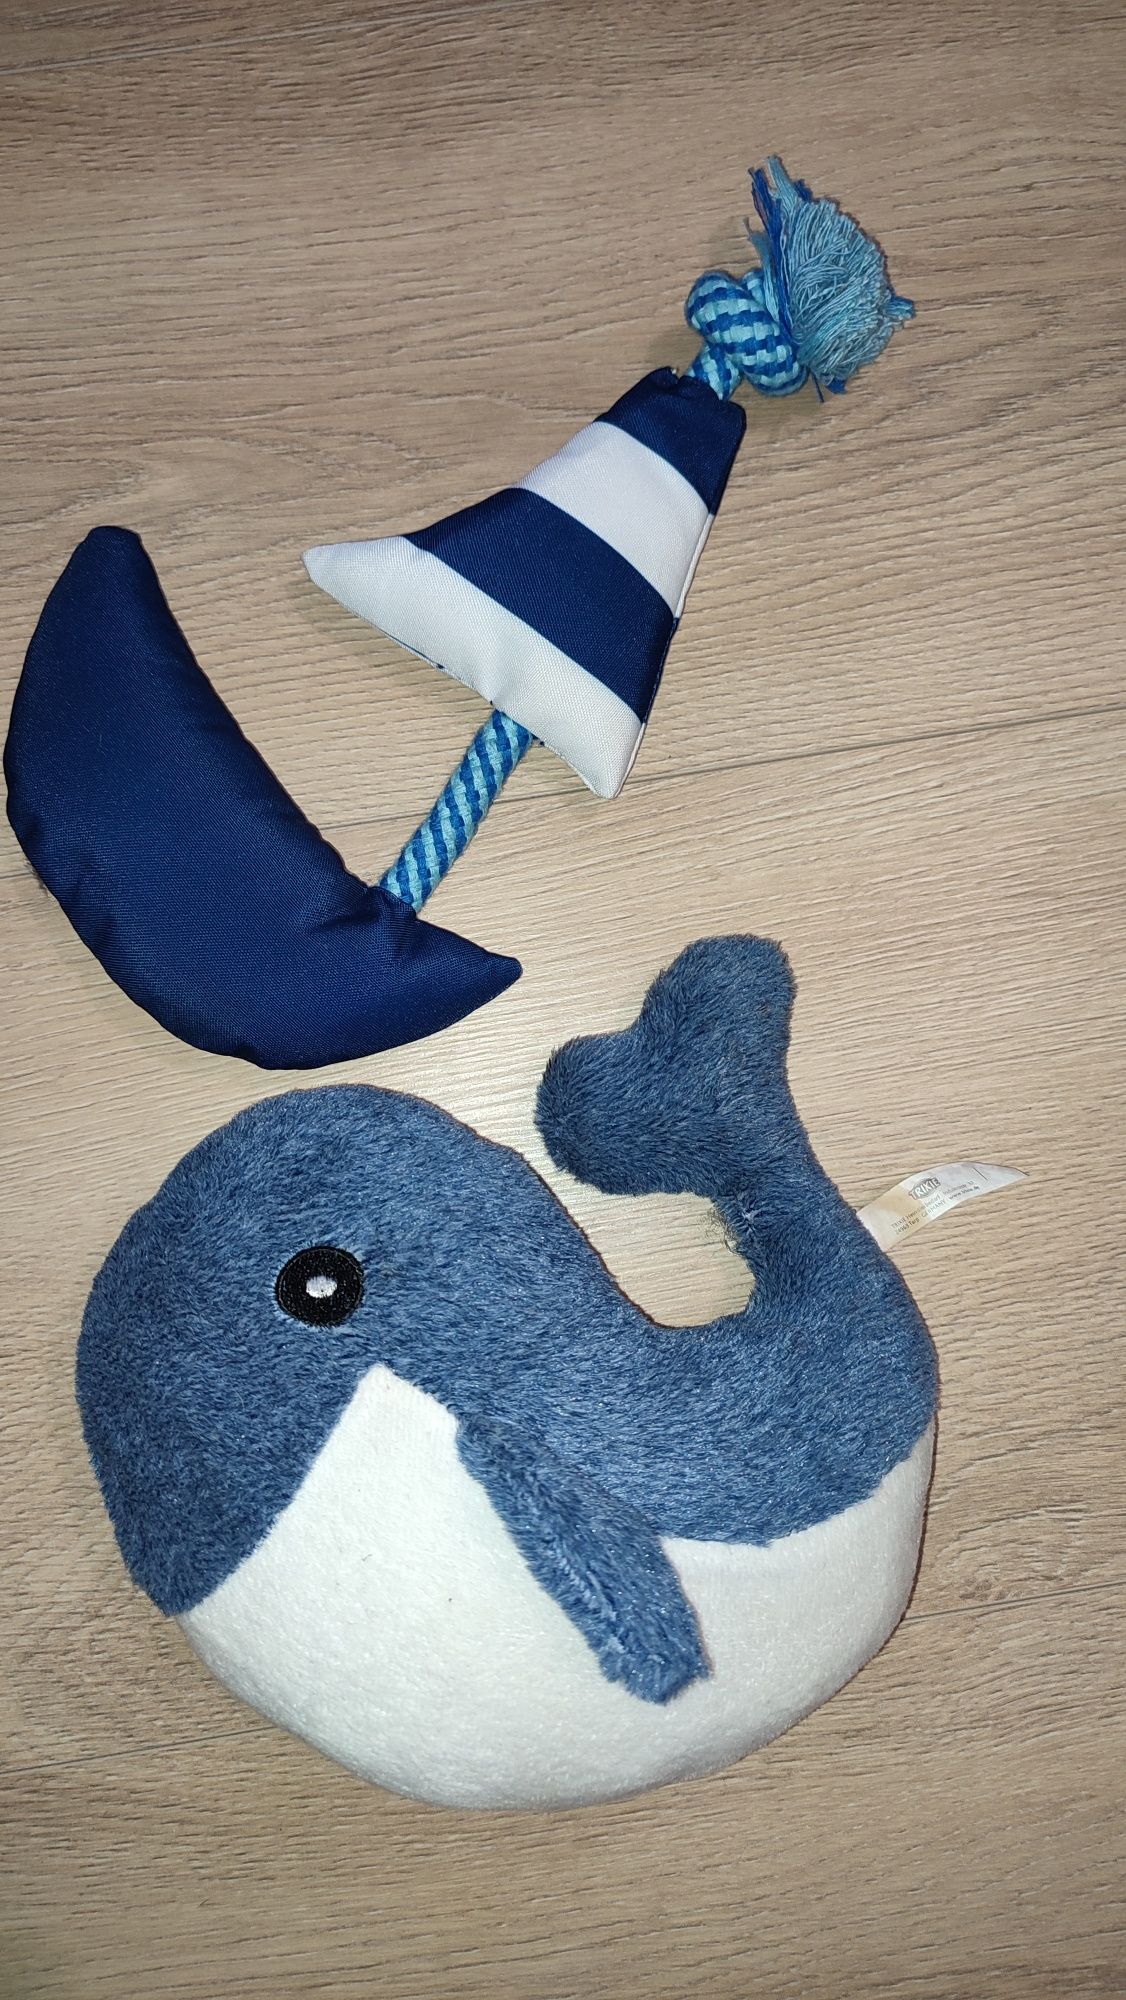 Zabawki dla psa Trixie wieloryb i łódka nowa